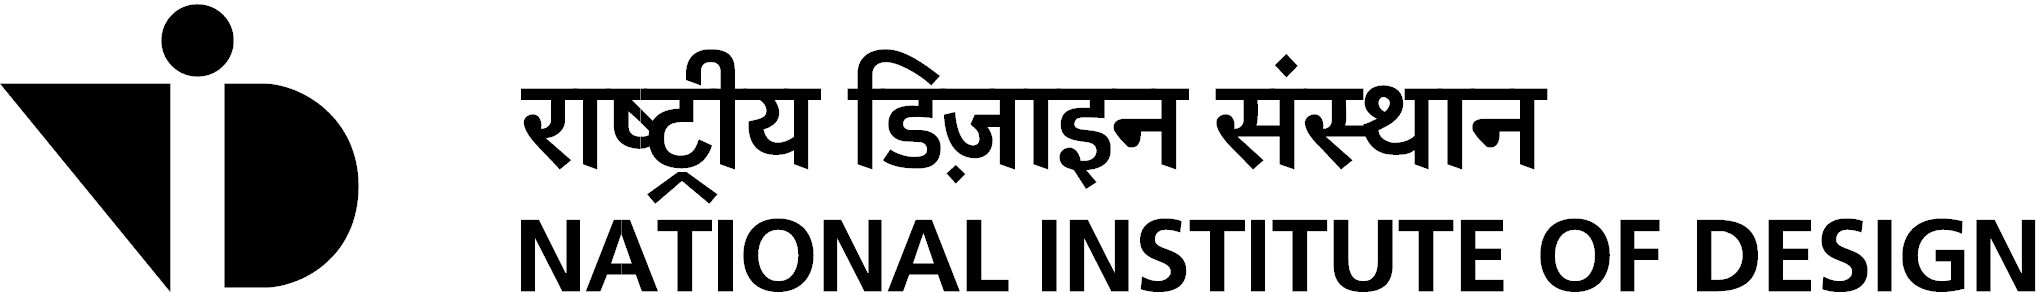 National Institute of Design, India